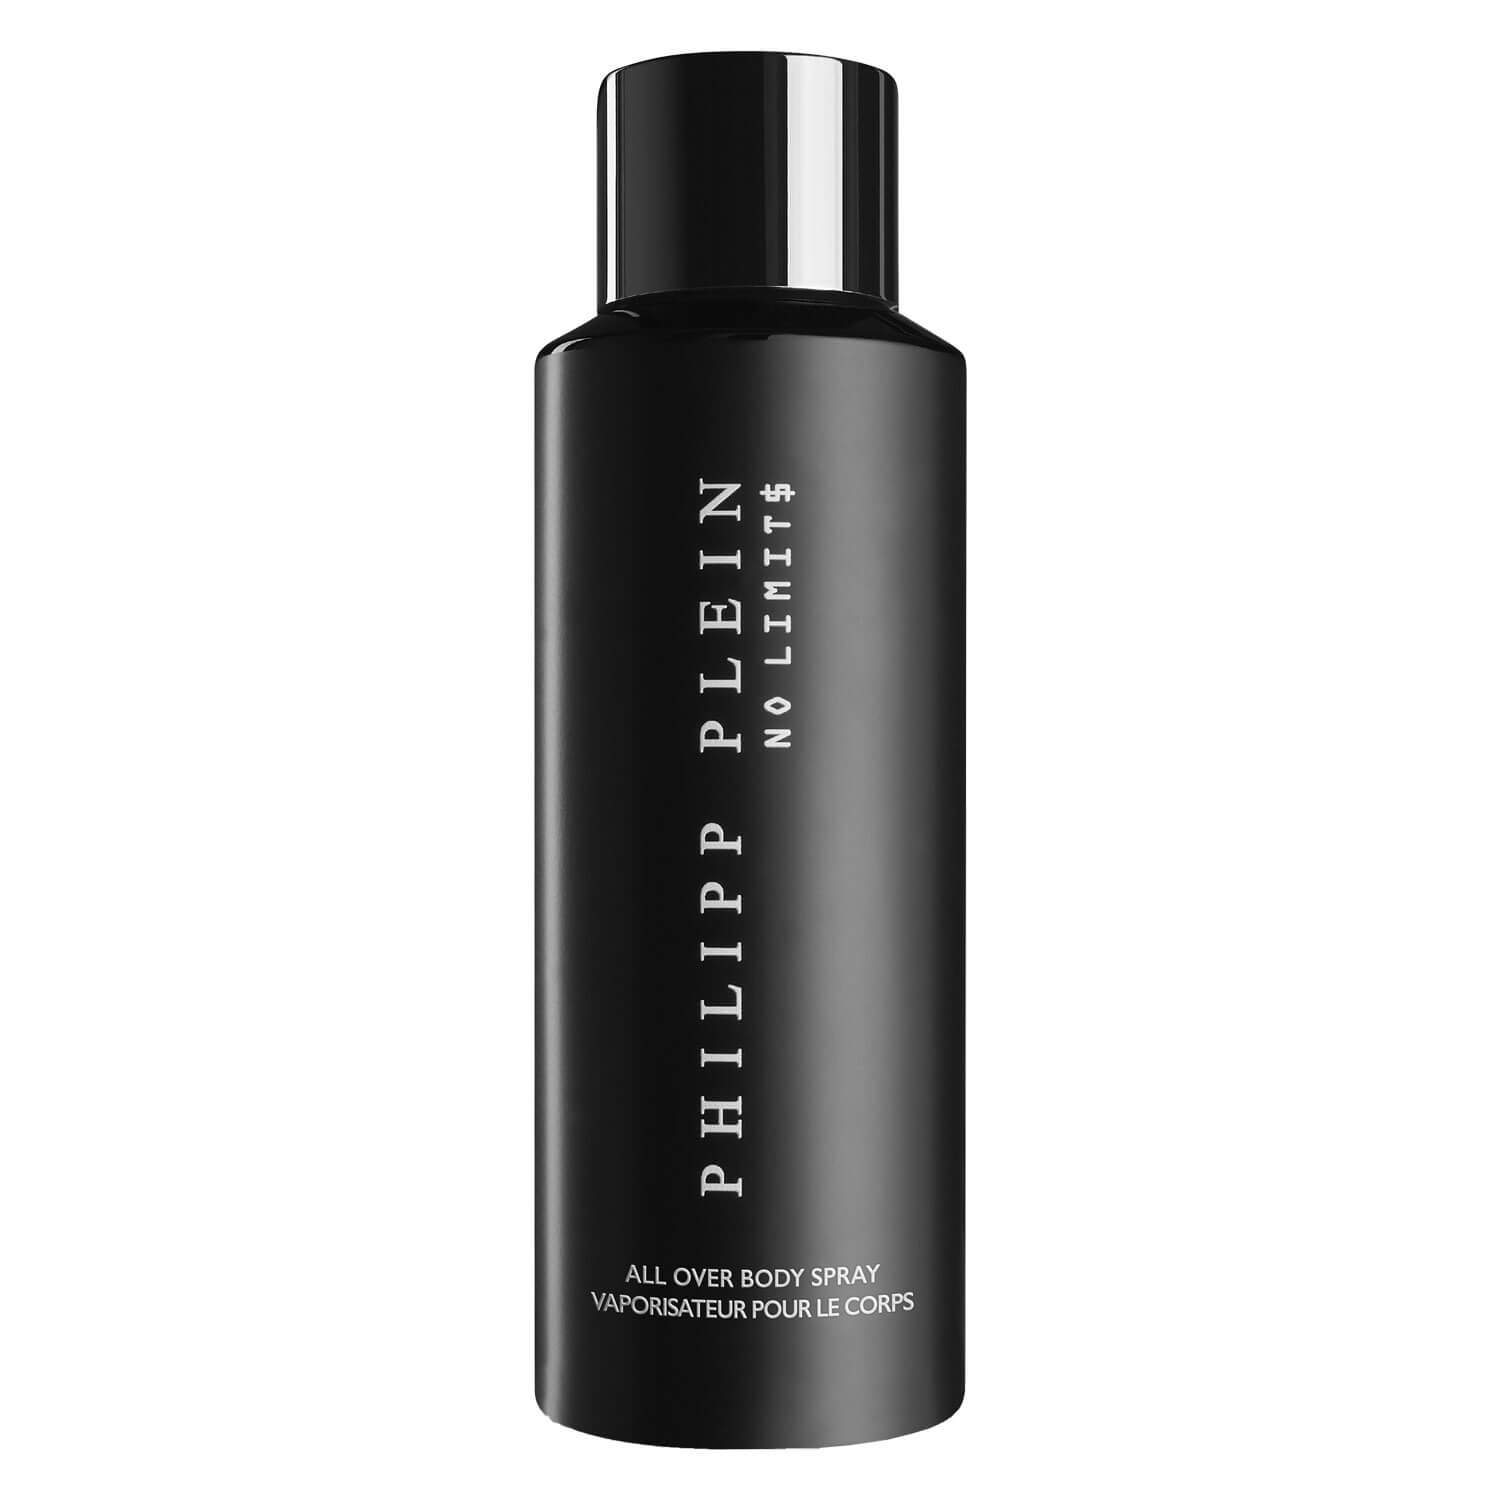 Produktbild von PHILIPP PLEIN - NO LIMIT$ GOOD $HOT Body Spray